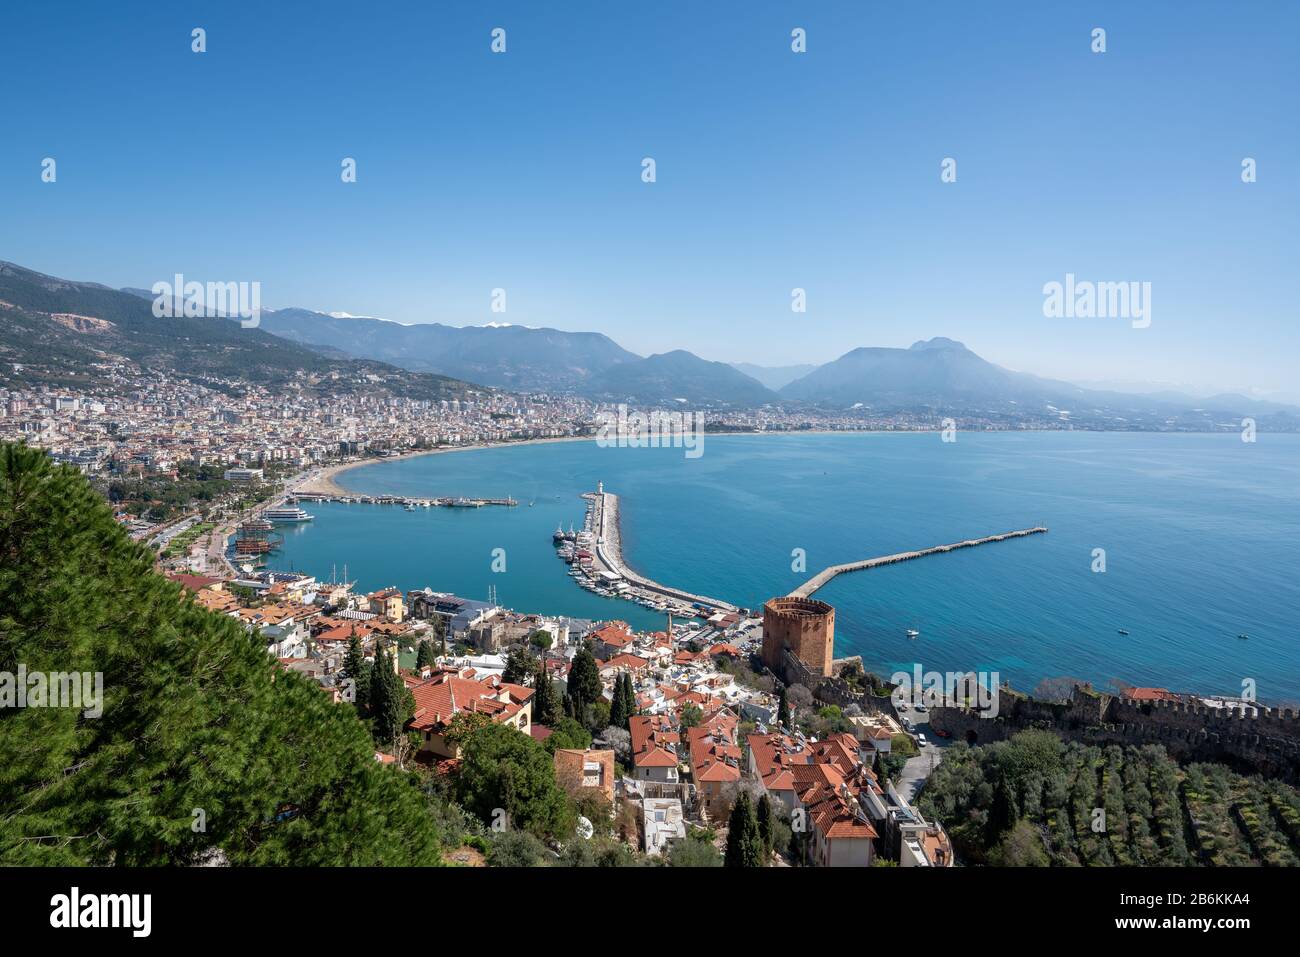 Vue aérienne sur la baie d'Alanya à Antalya en Turquie. Mer et ville avec un ciel ouvert Banque D'Images